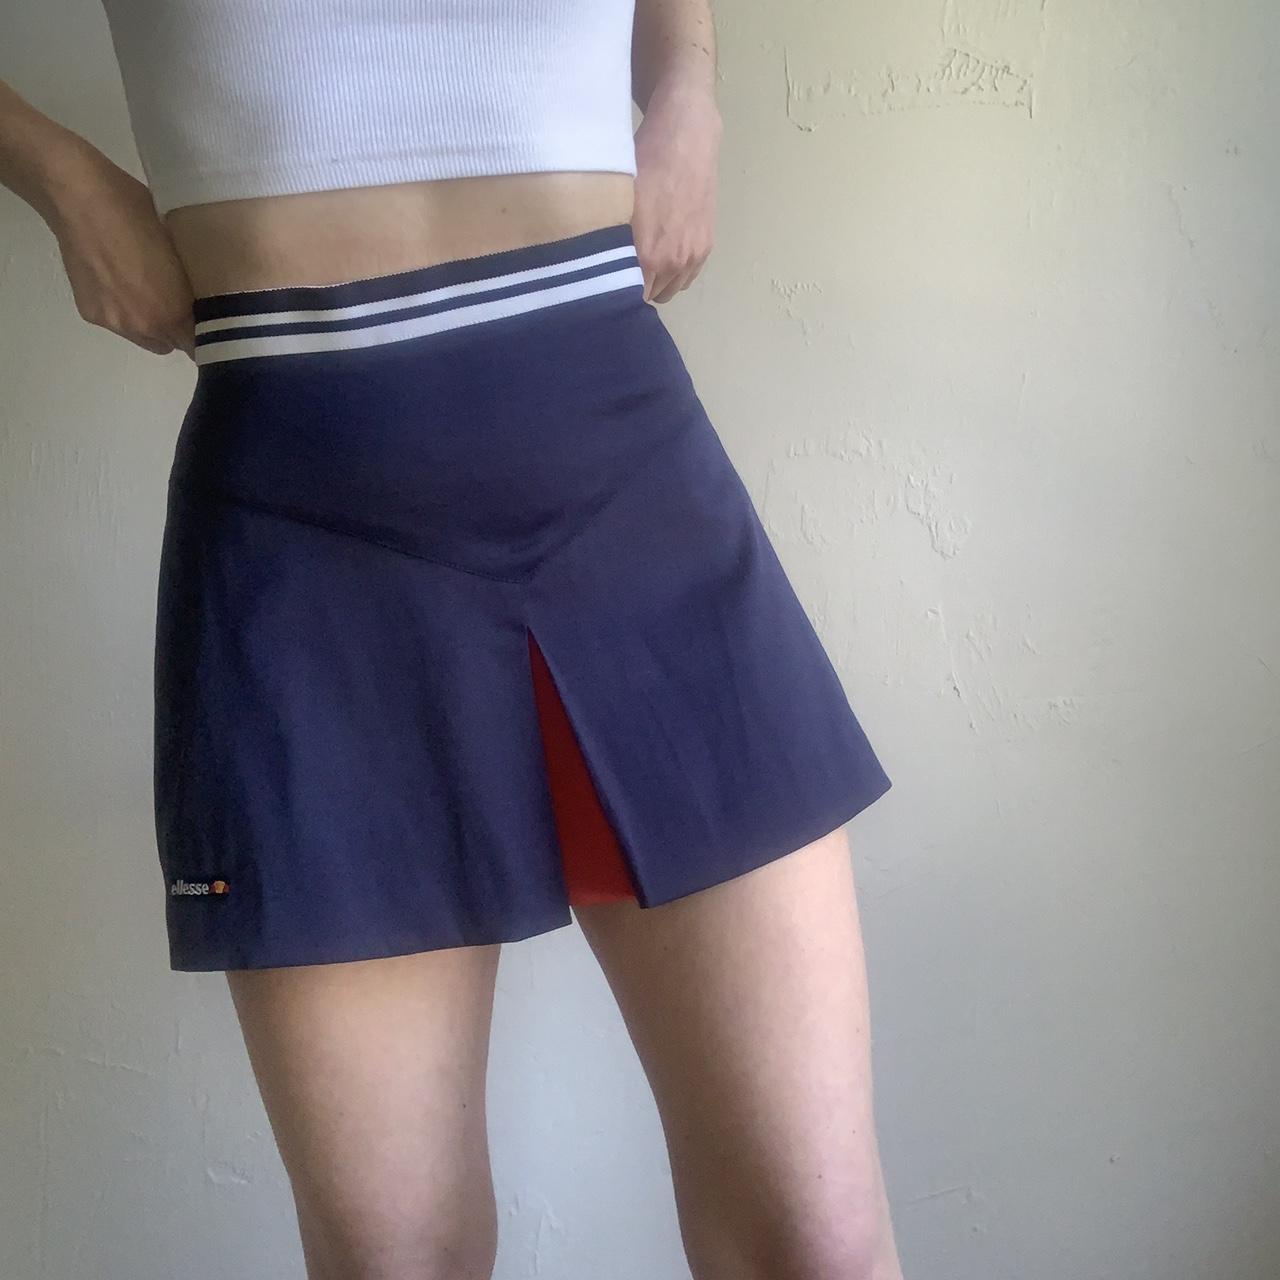 Ellesse Women's Navy and Blue Skirt